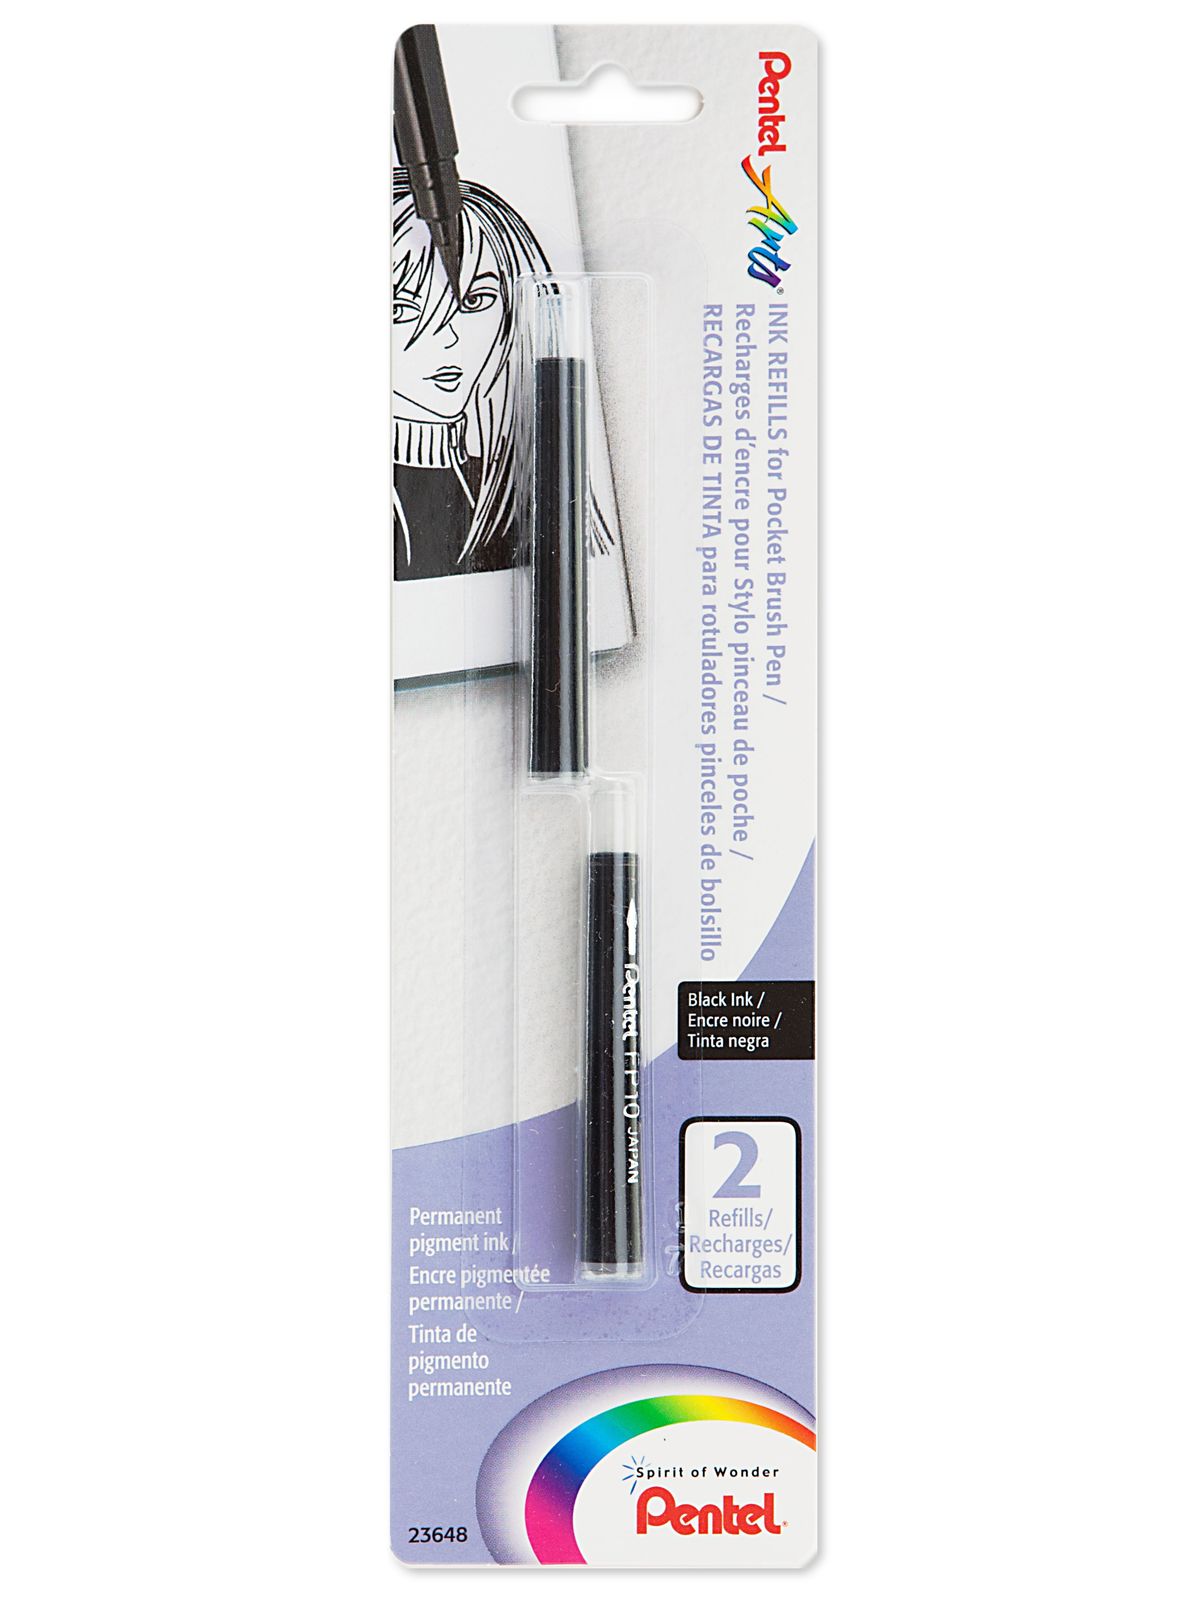 Pocket Brush Pen Refills, Pack Of 2 Black